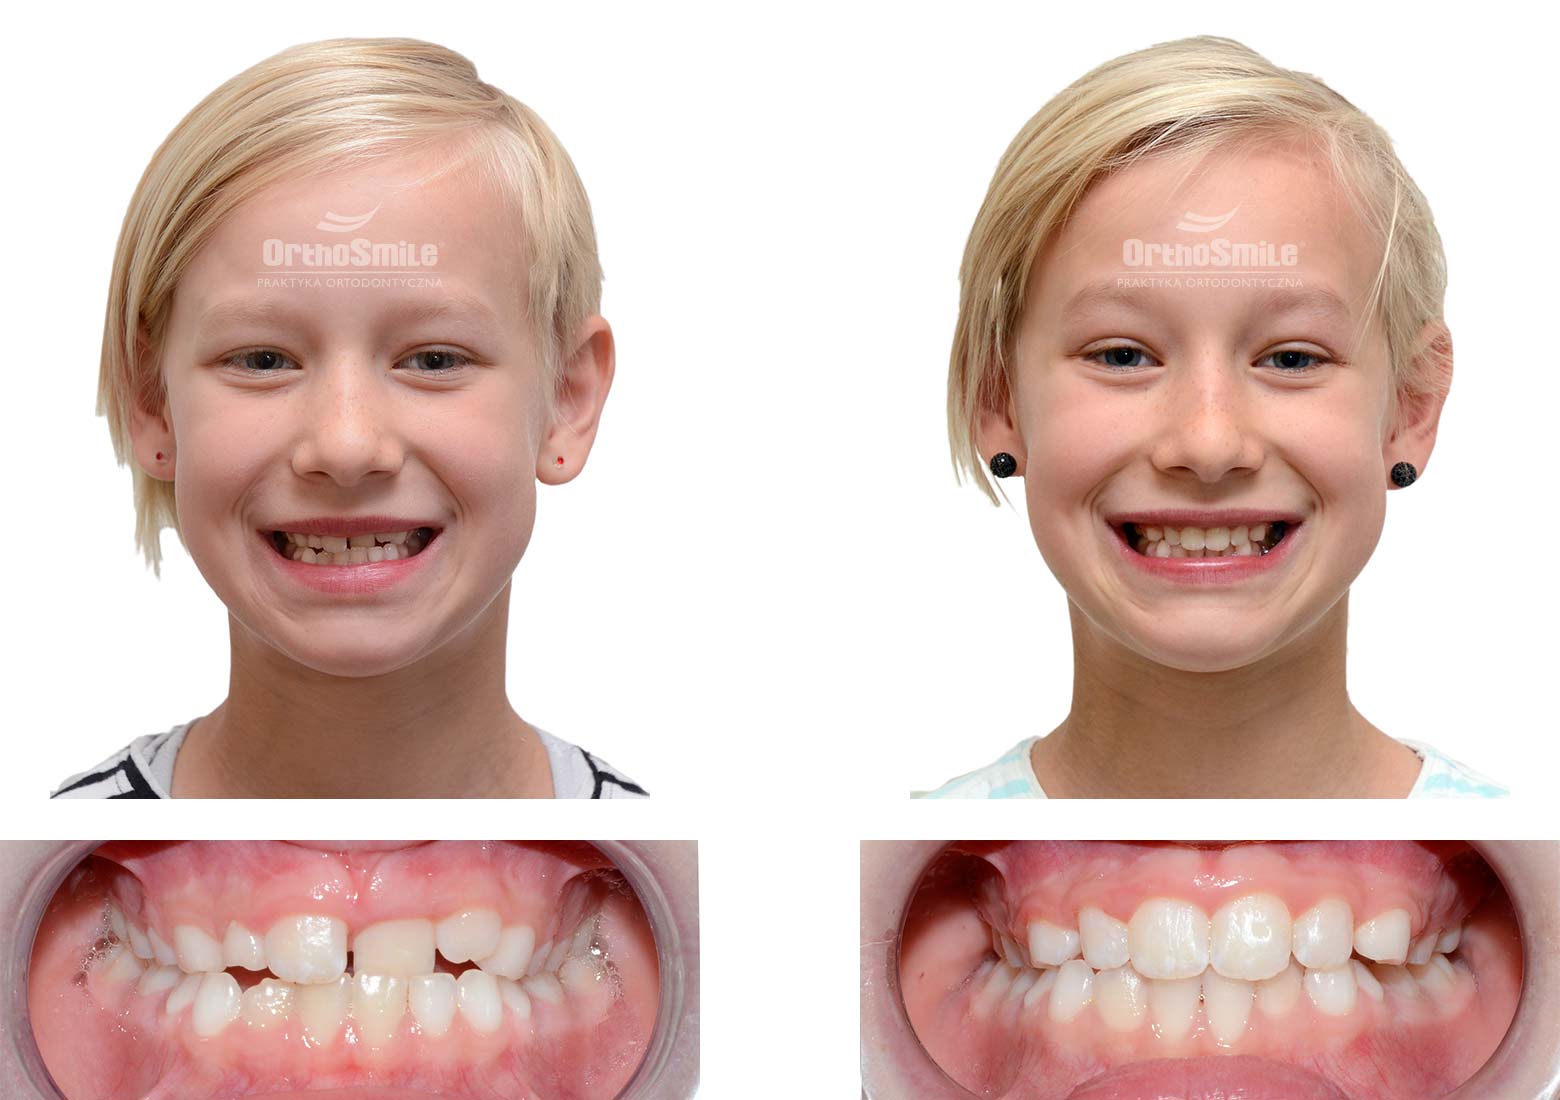 Dziecko ze zgryzem krzyżowym leczone aparatem fragmentarycznym typu Damon. Czas leczenia około 12 miesięcy. Leczenie ortodontyczne dzieci – metamorfozy. Praktyka Ortodontyczna Orthosmile, Wrocław